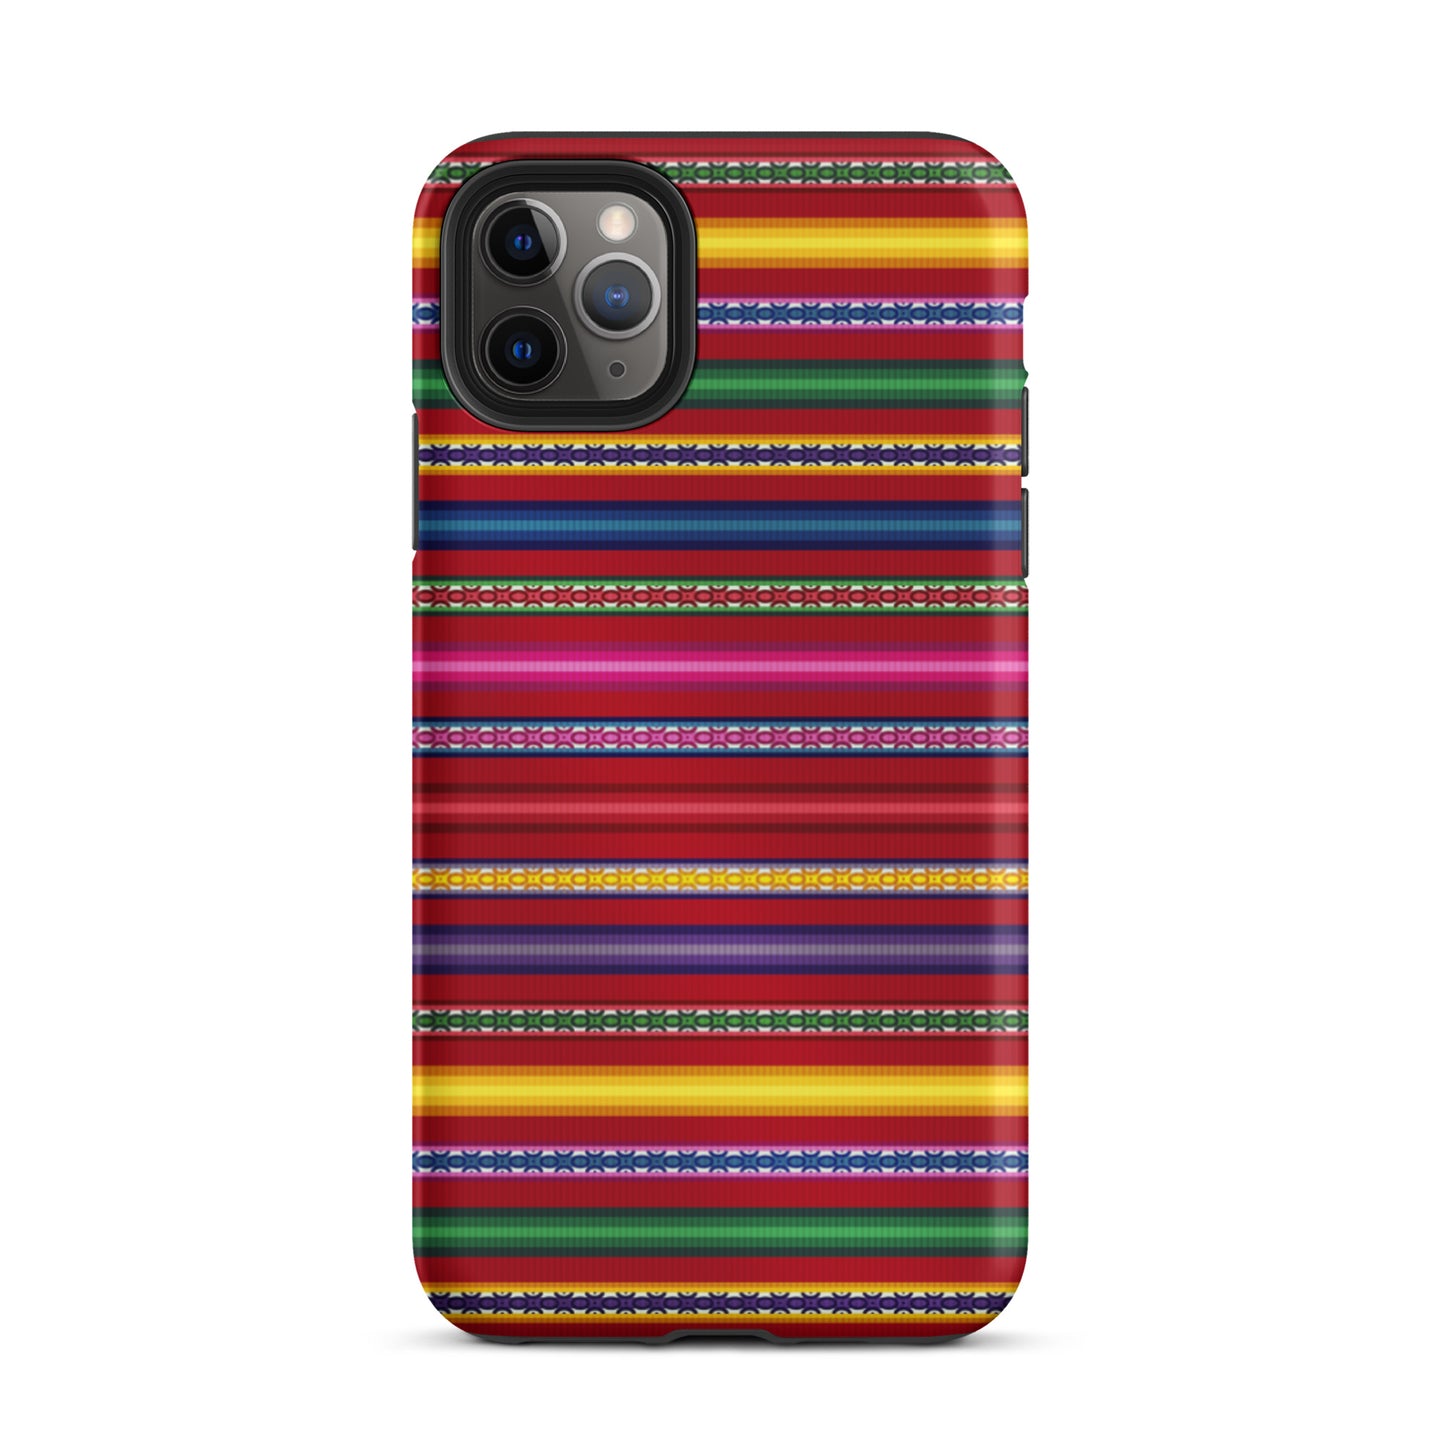 Peruvian Tough iPhone 11 Pro Max case